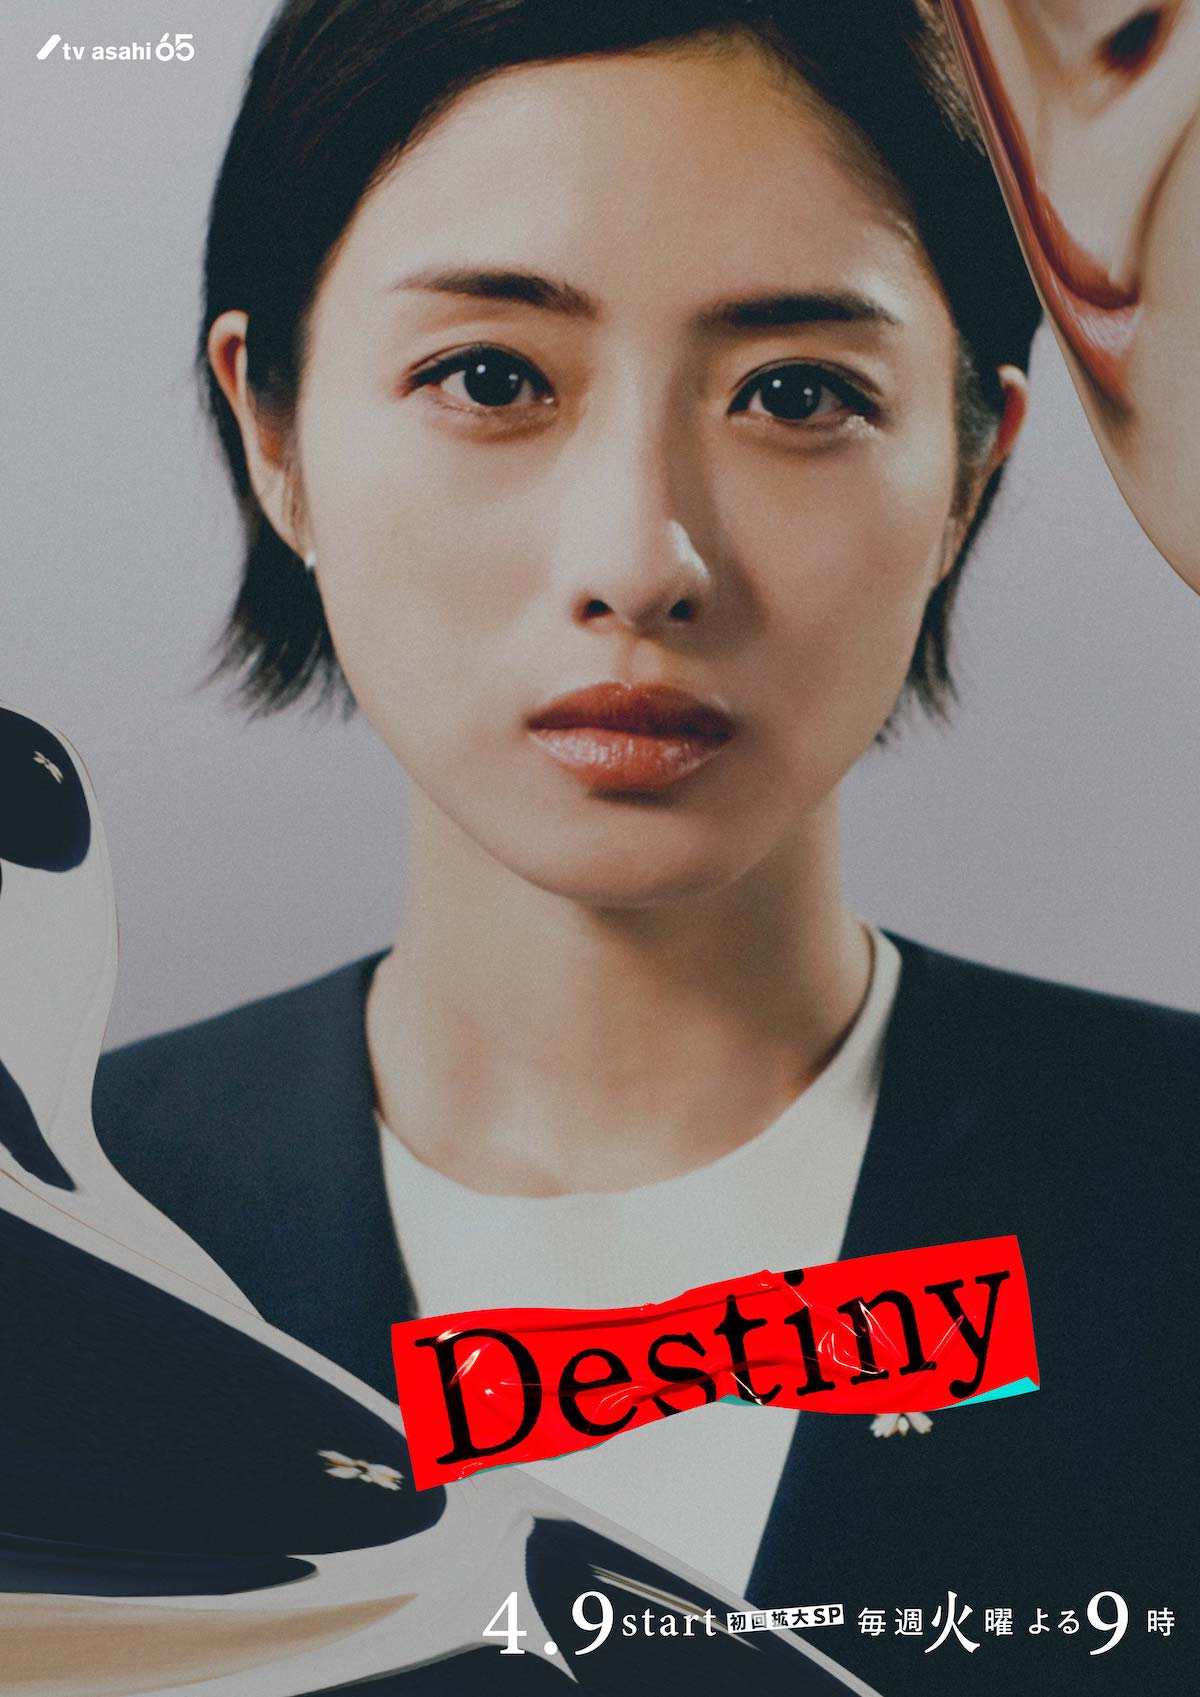 『Destiny』キャラビジュアル公開